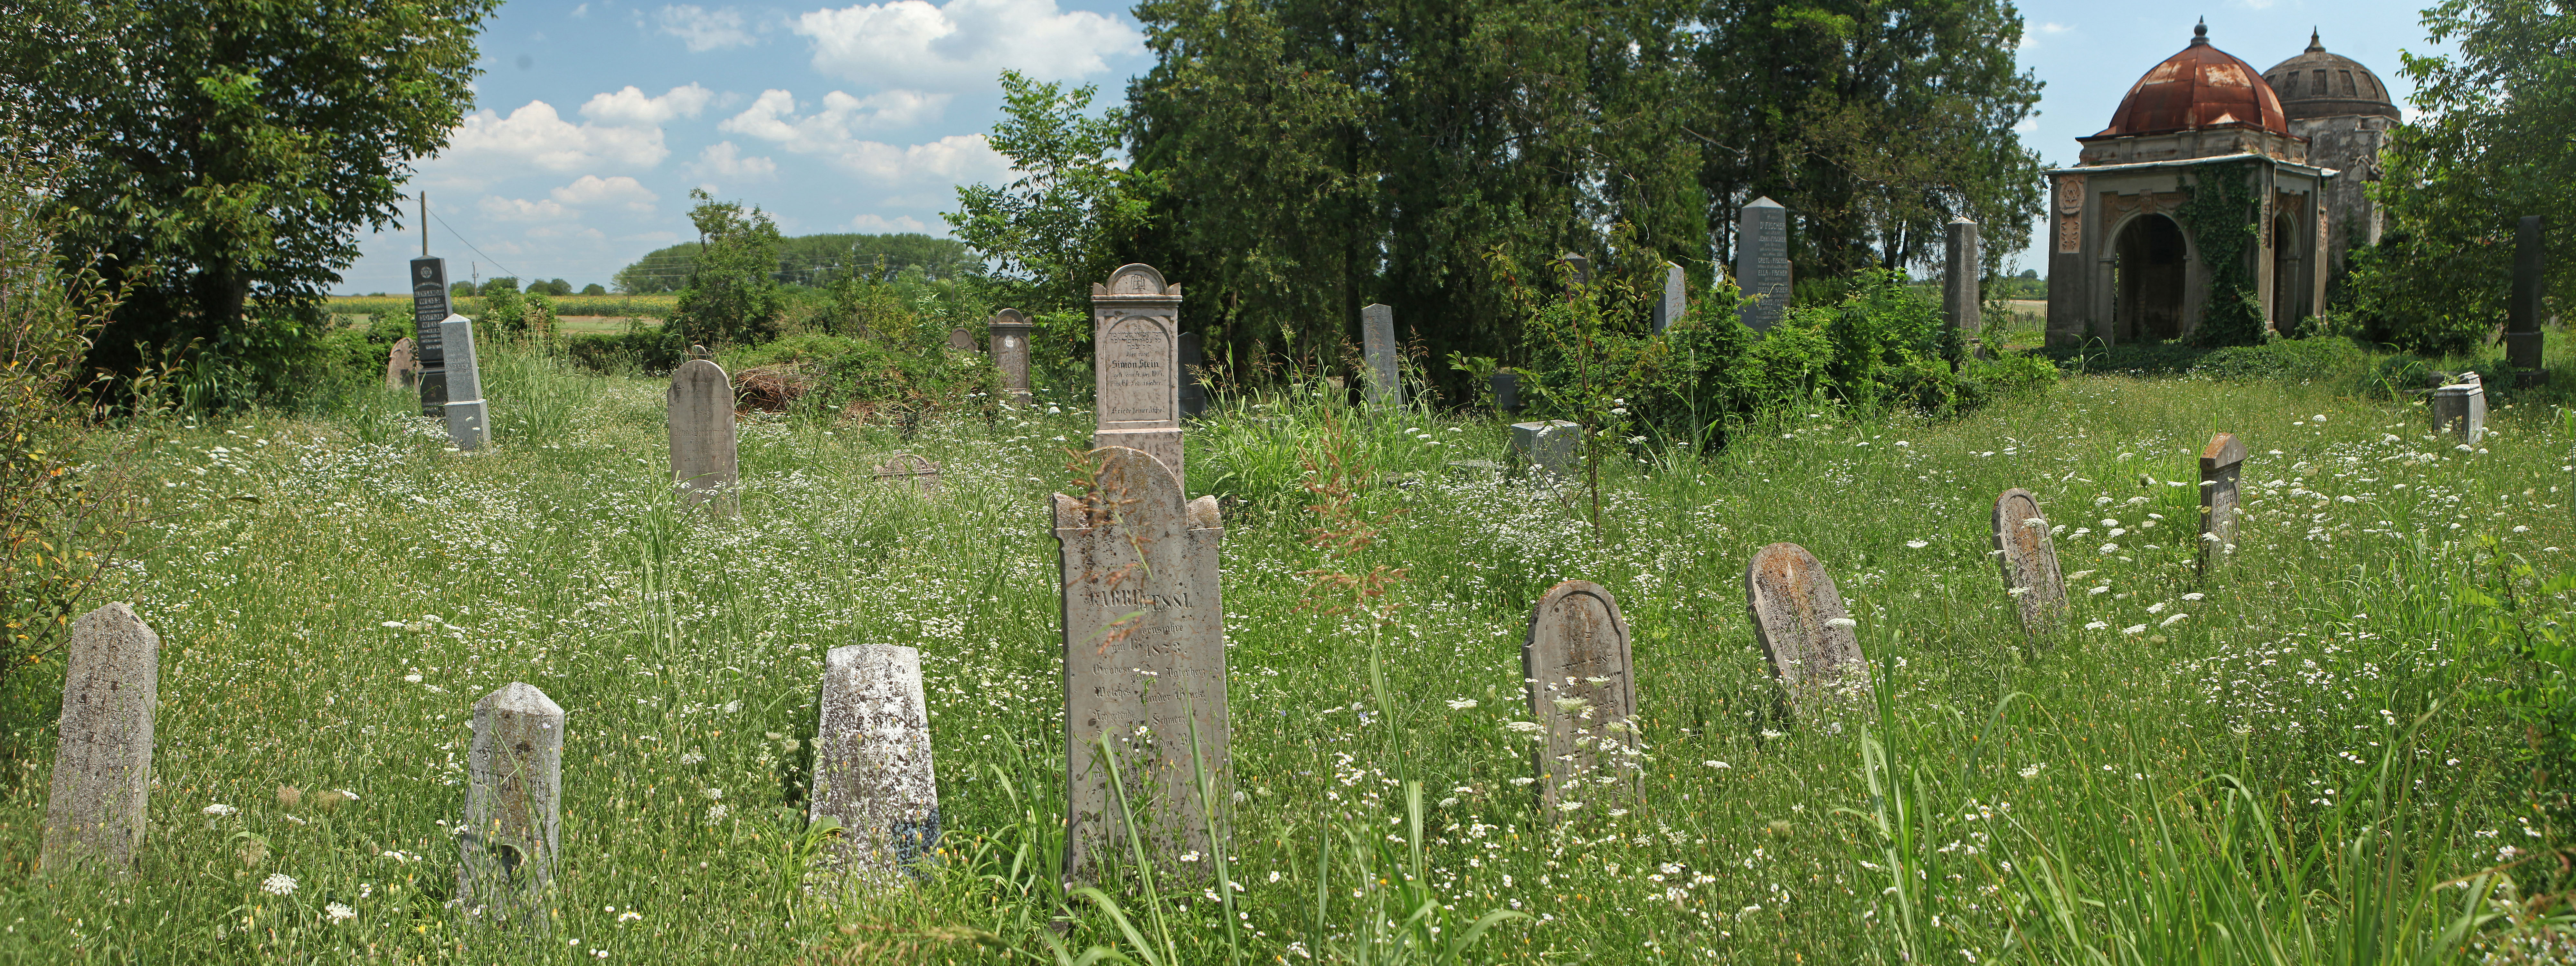 The Jewish Cemetery in Ruma